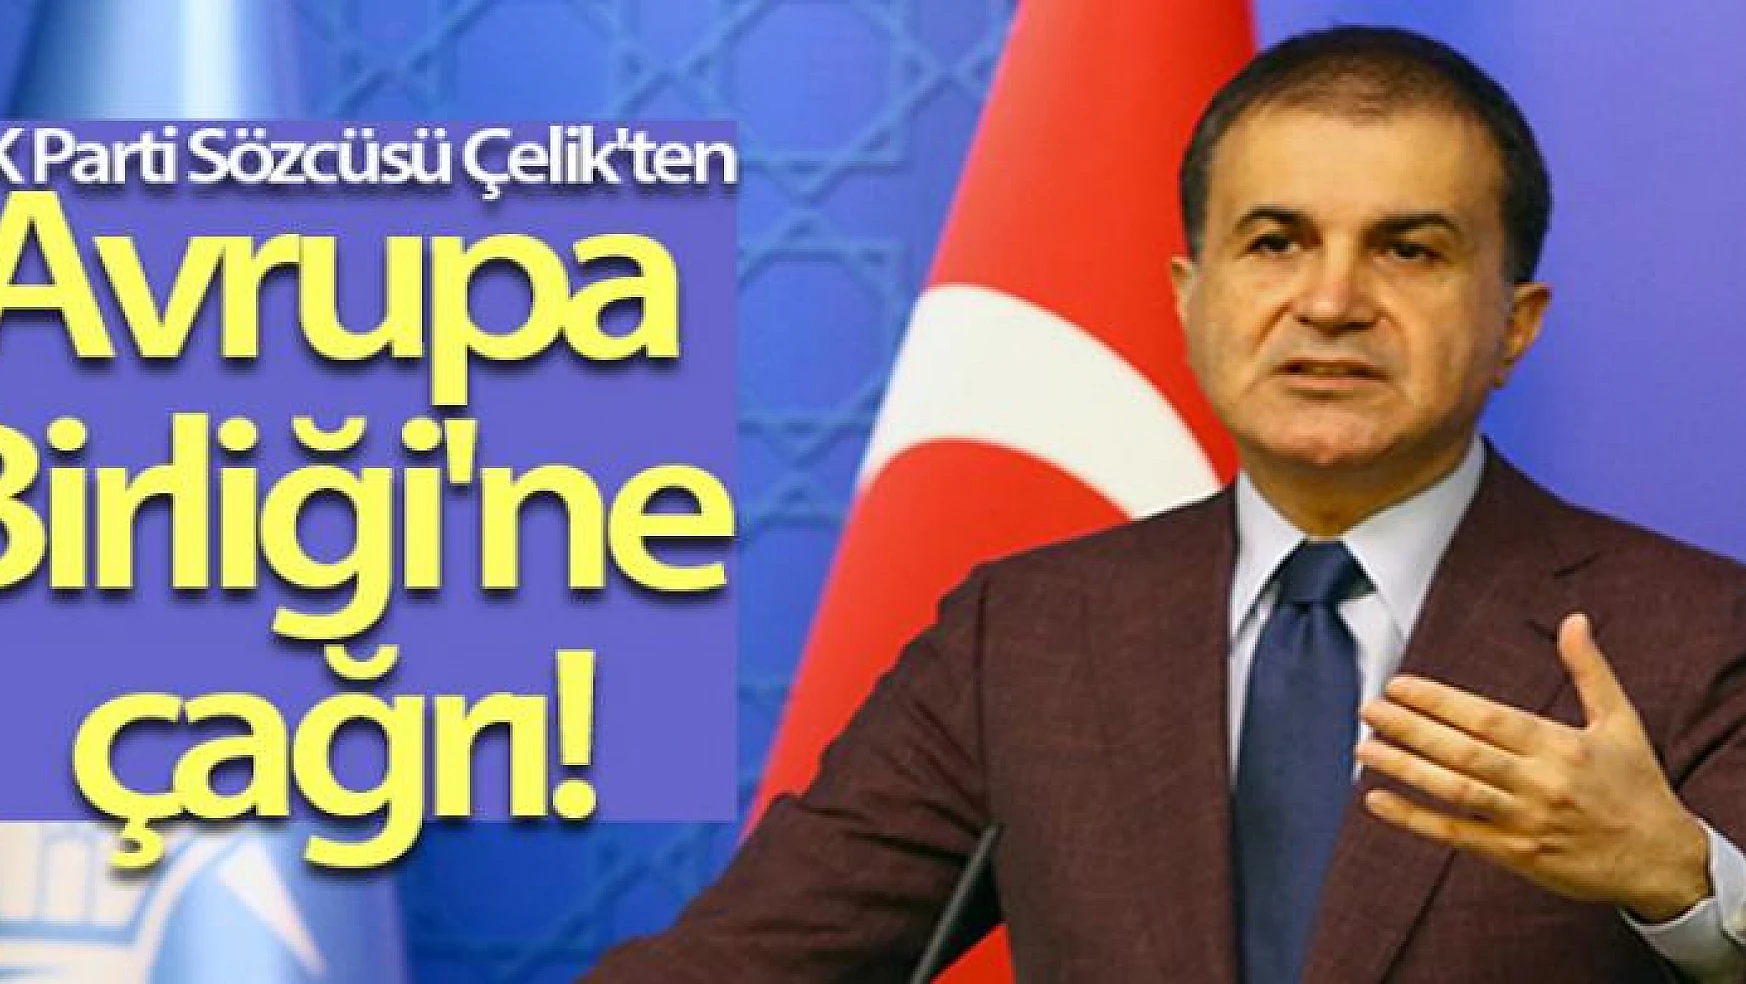 AK Parti Sözcüsü Ömer Çelik'ten Avrupa Birliği'ne çağrı!